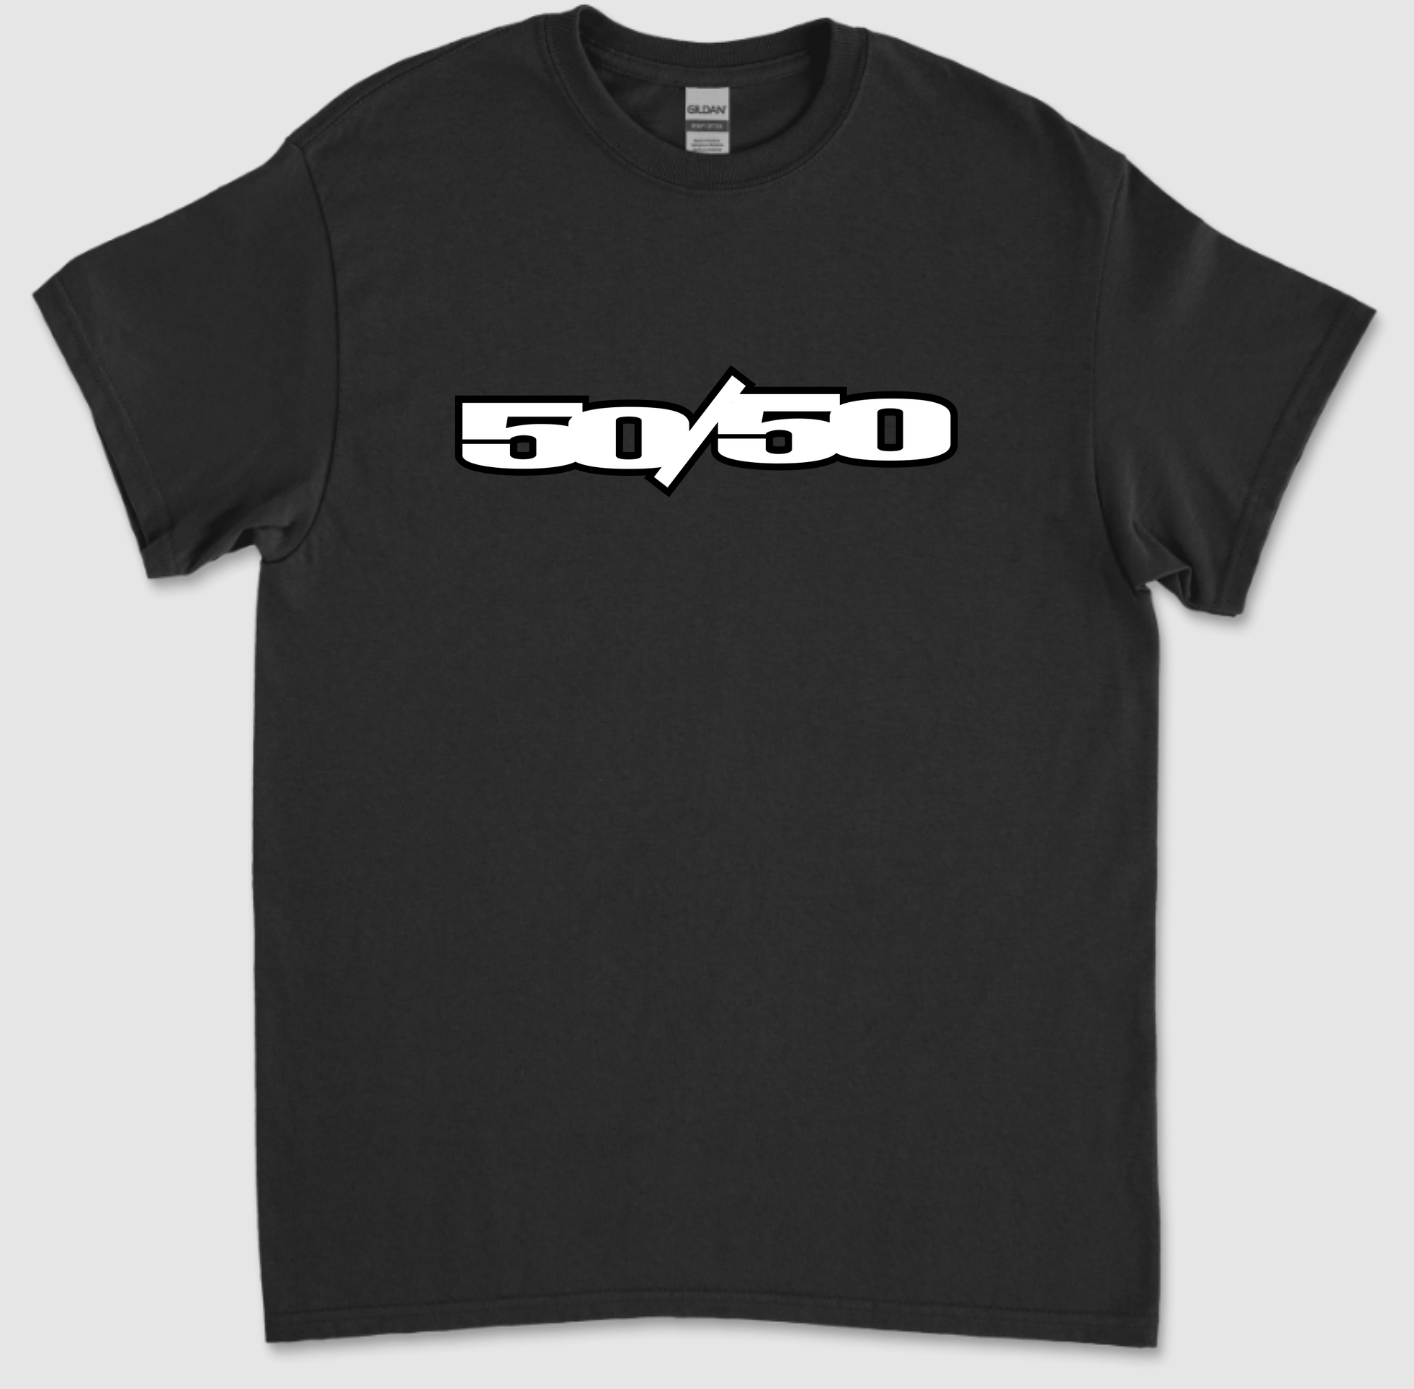 50/50 T-Shirt Black Apparel Tshirts